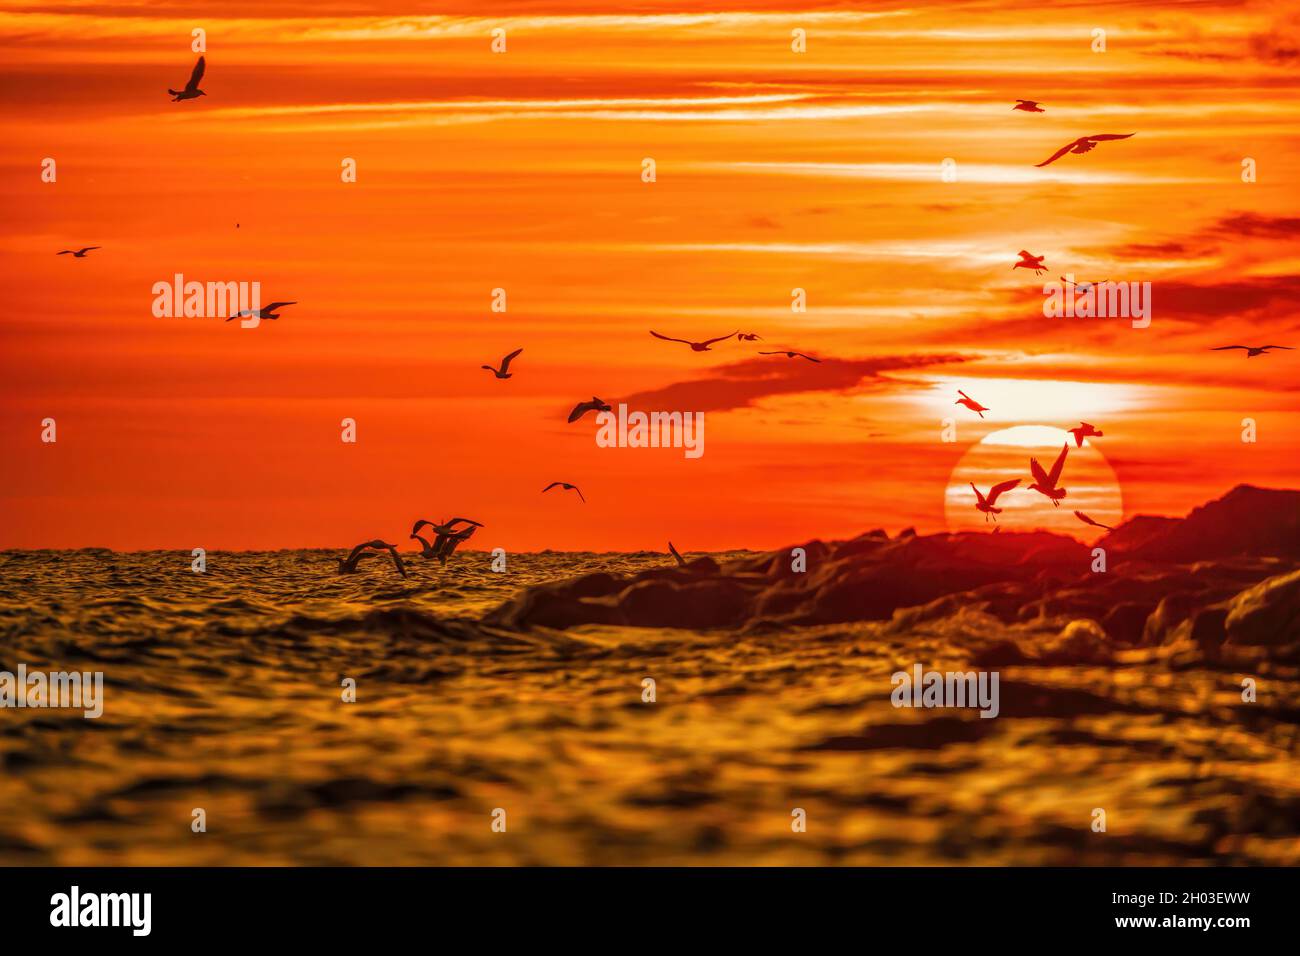 Un troupeau de mouettes volent et pêchent dans la mer.Coucher de soleil au-dessus de l'océan, soleil éblouissant.Silhouettes de mouettes volantes au ralenti loin du Banque D'Images